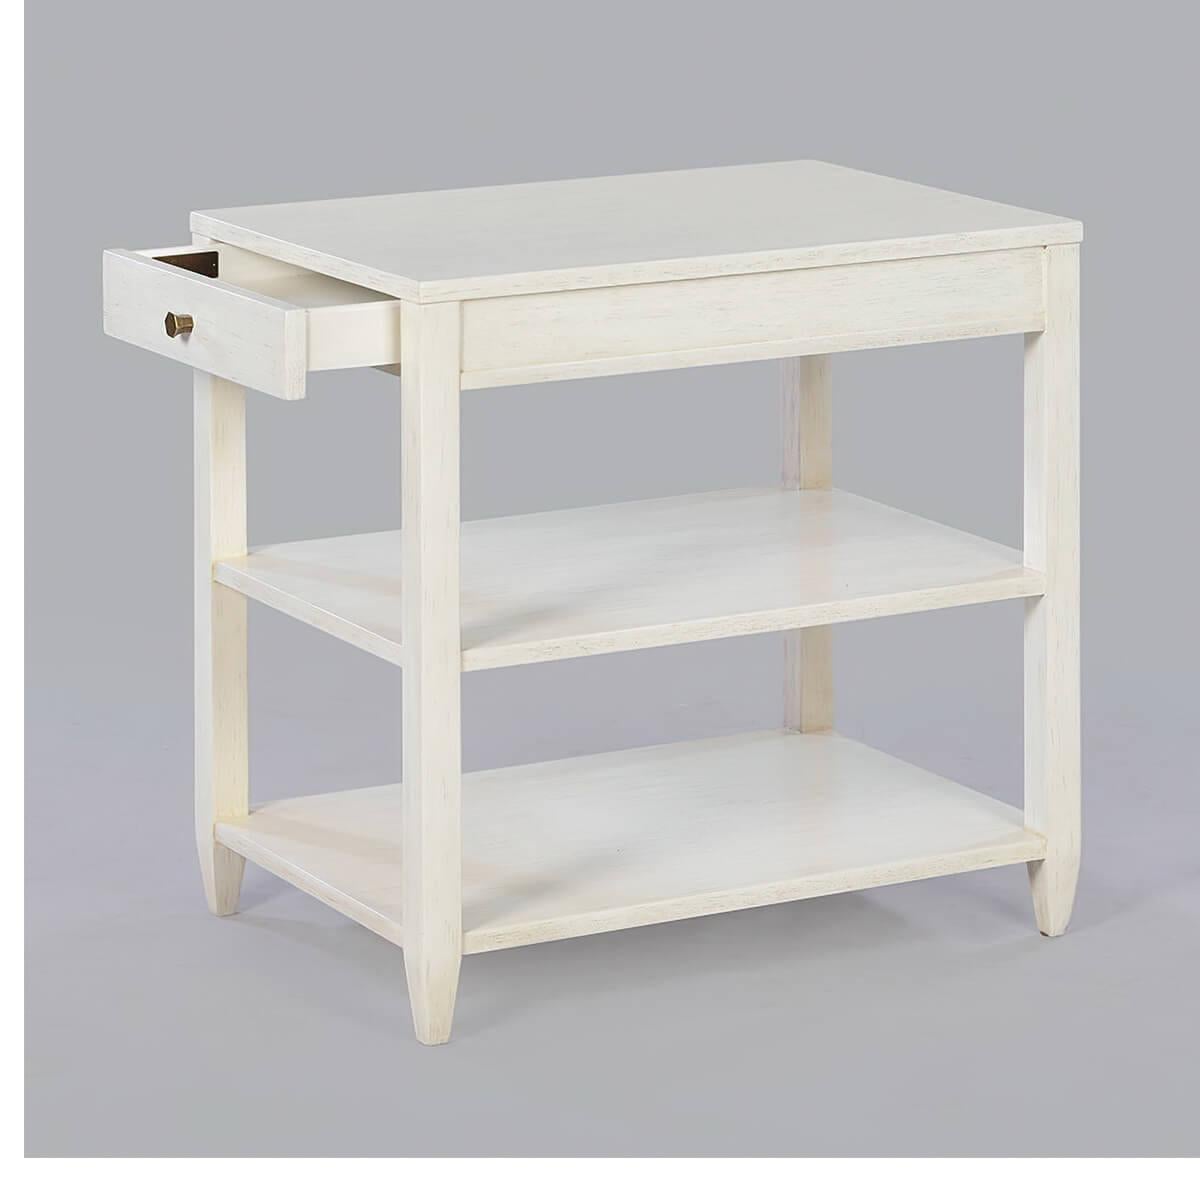 Table d'appoint rectangulaire étroite classique avec un tiroir, deux étagères, une quincaillerie en laiton et un adolescent effilé, a une finition peinte en blanc 